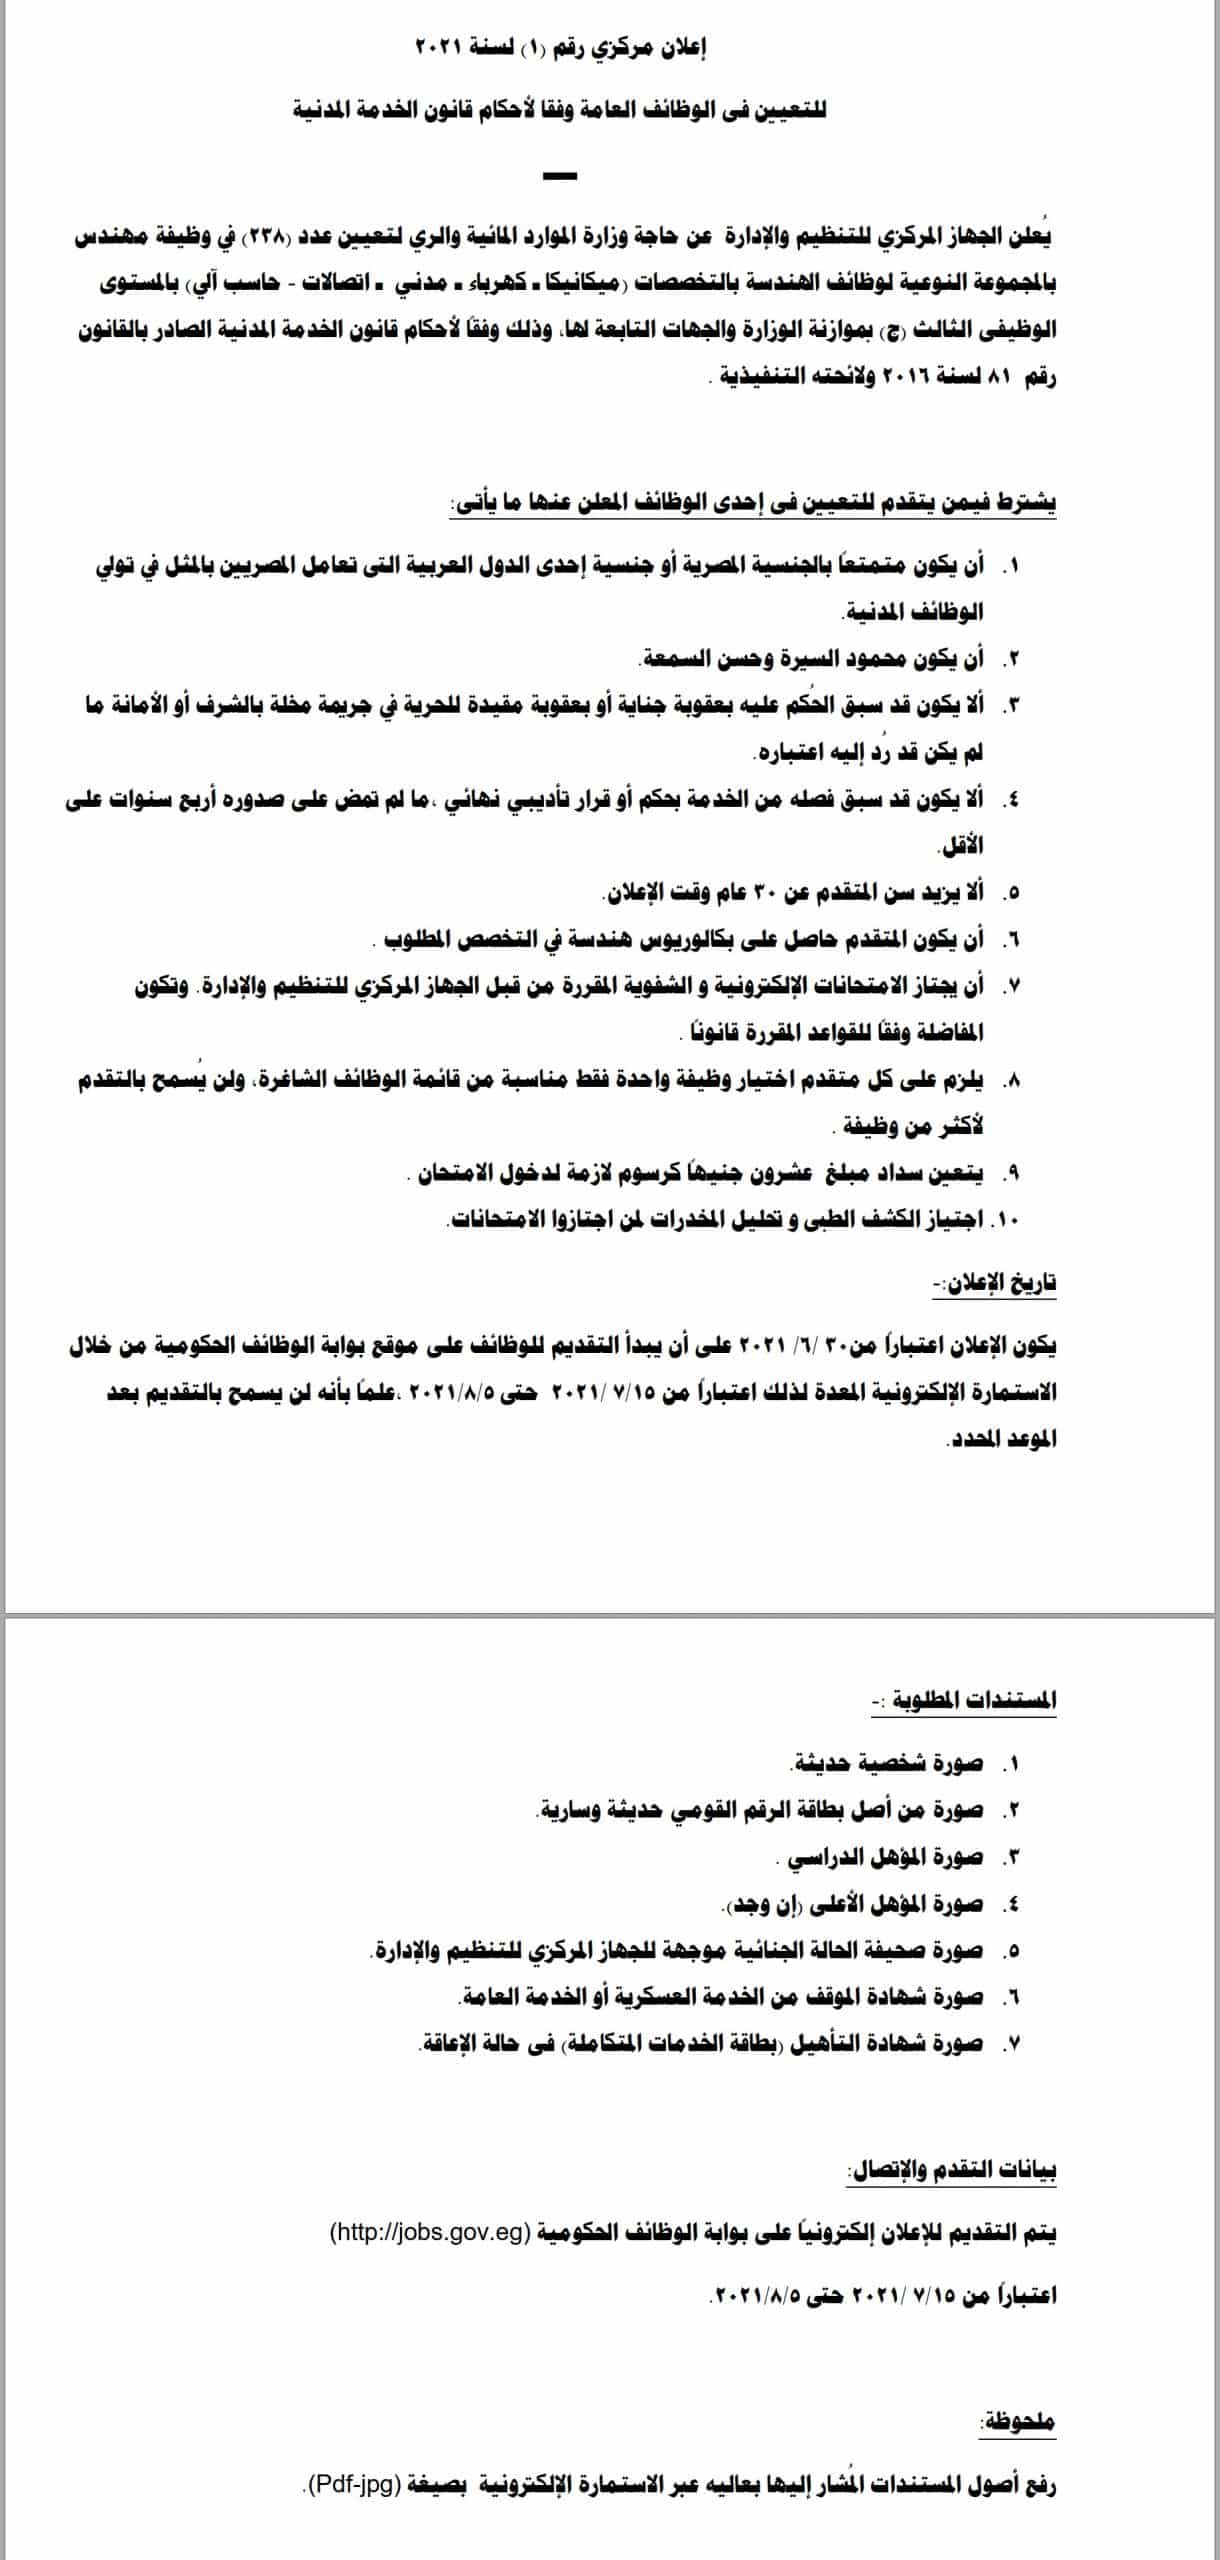 وظائف وزارة الري والموارد المائية بالقاهرة والمحافظات تعيينات اغسطس 2021 لجميع المؤهلات 